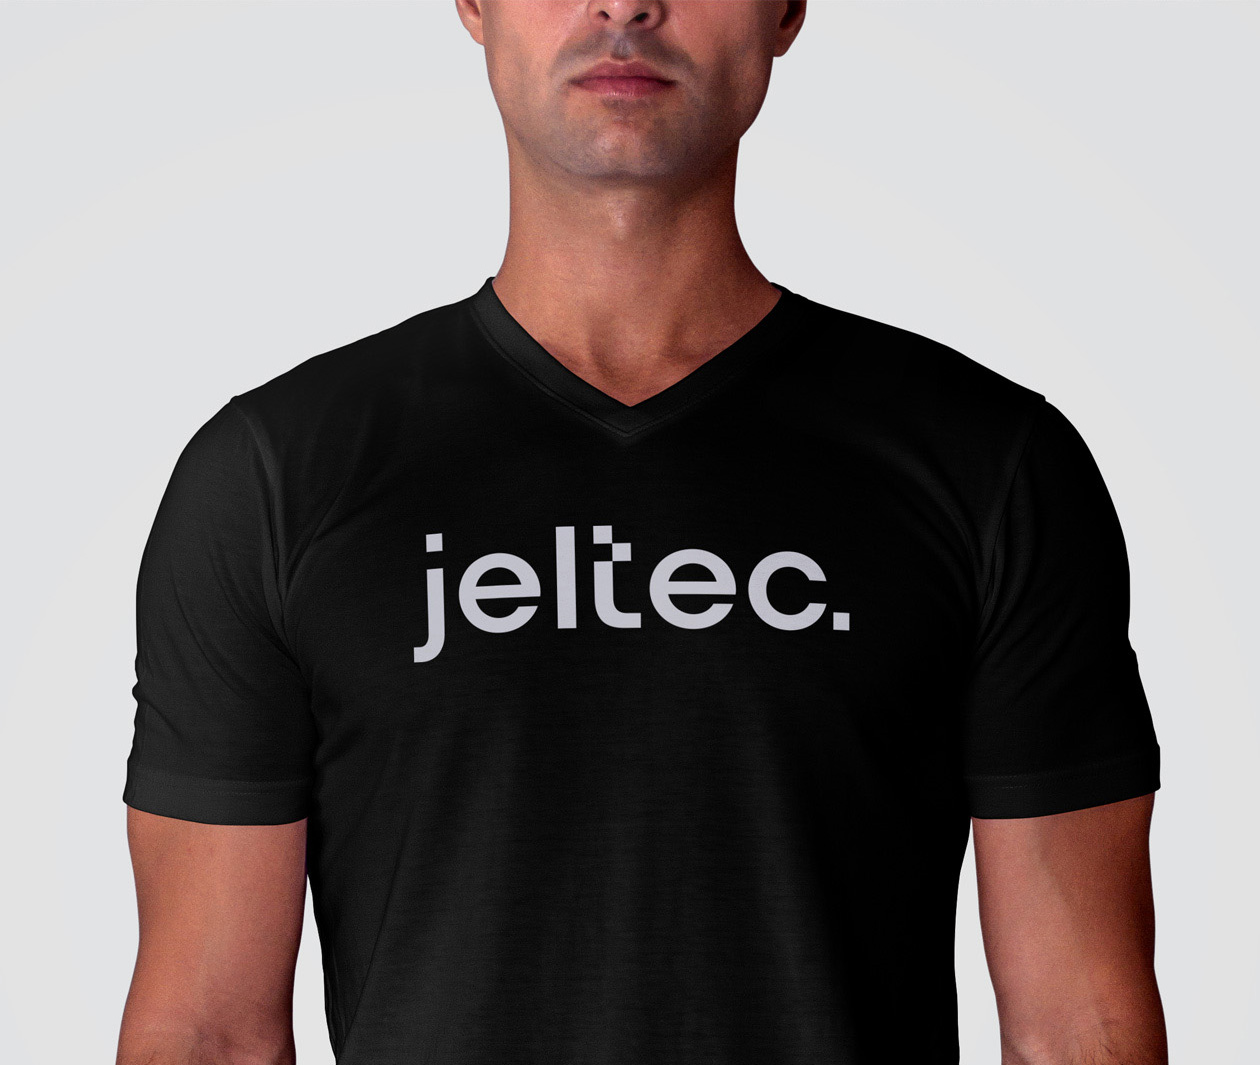 jeltec logo branding